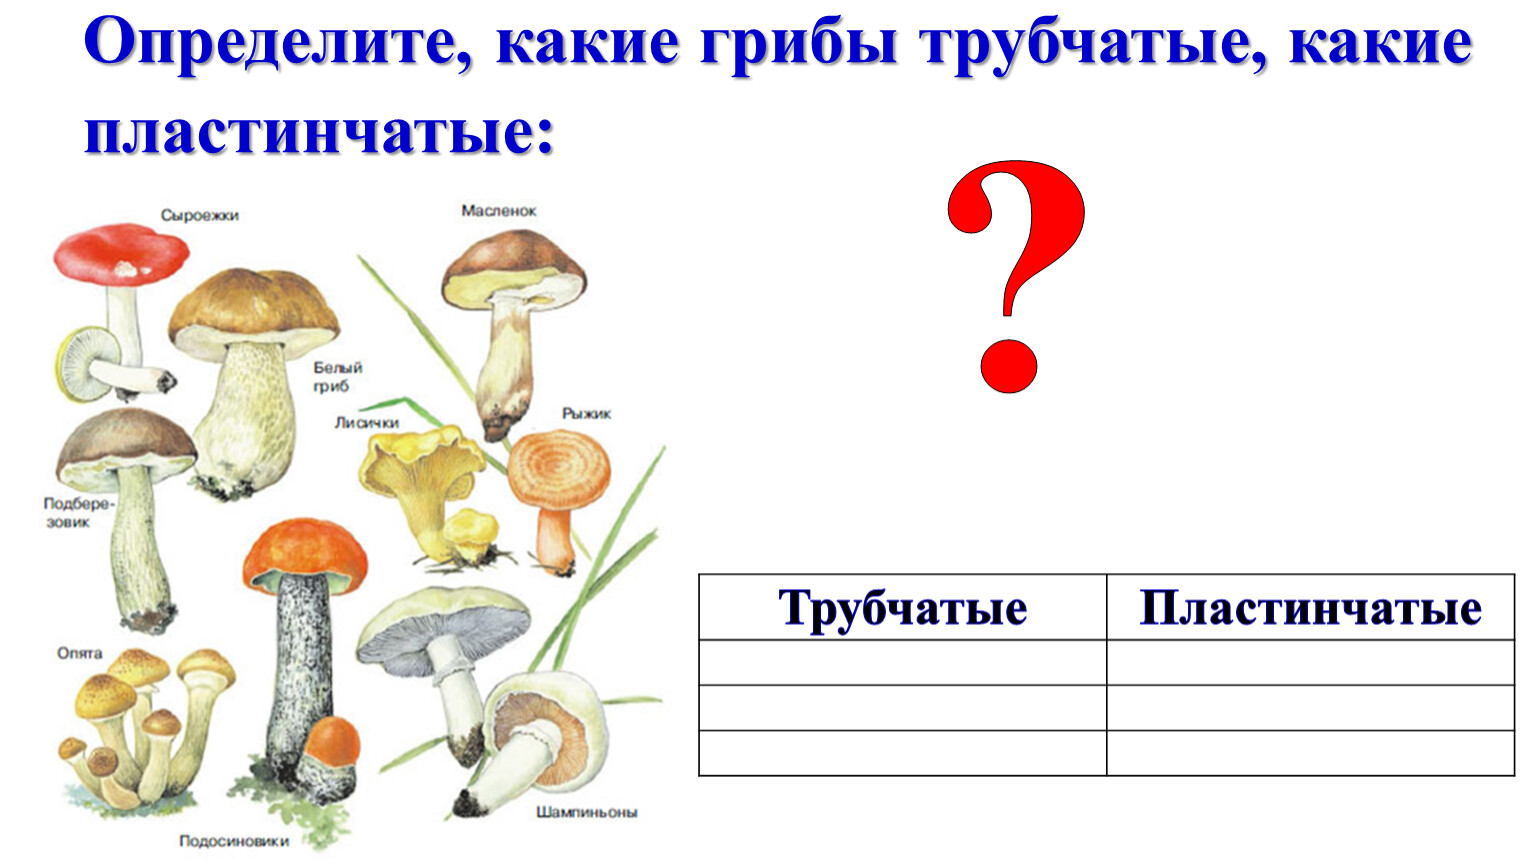 Пластинчатые грибы примеры. Трубчатые грибы. Масленок трубчатый или пластинчатый гриб. Трубчатые и пластинчатые грибы примеры. Трубчатые и пластинчатые примеры